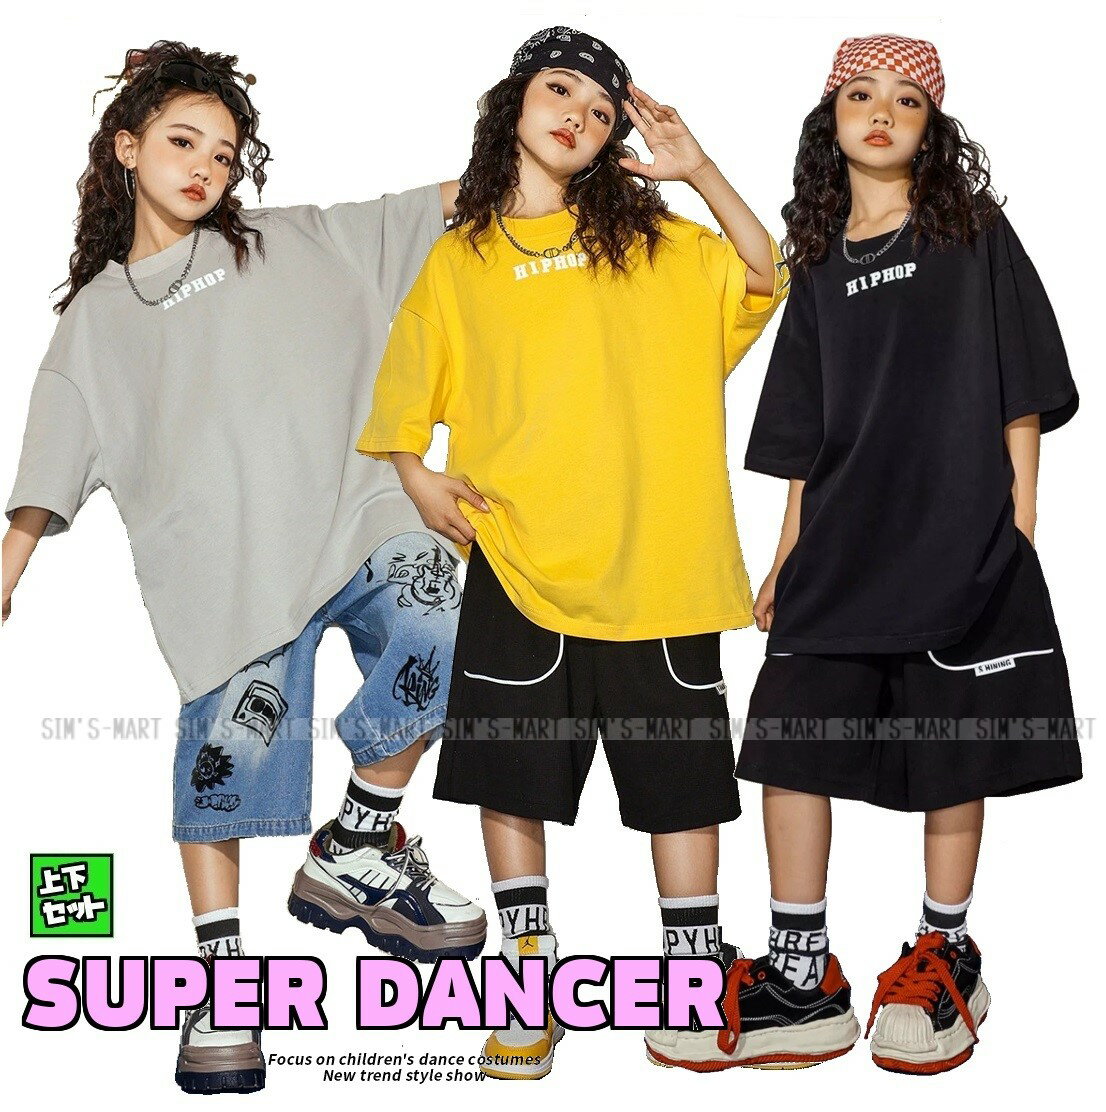 キッズダンス衣装 男の子 女の子 ダンス衣装 赤 黒 キッズ ダンス 衣装 トップス ジュニア シャツ ダンス 衣装 ガールズ 韓国 子供服 ヒップホップ ダンスウェア k-pop hiphop パンツ キッズ ダンス カーゴパンツ